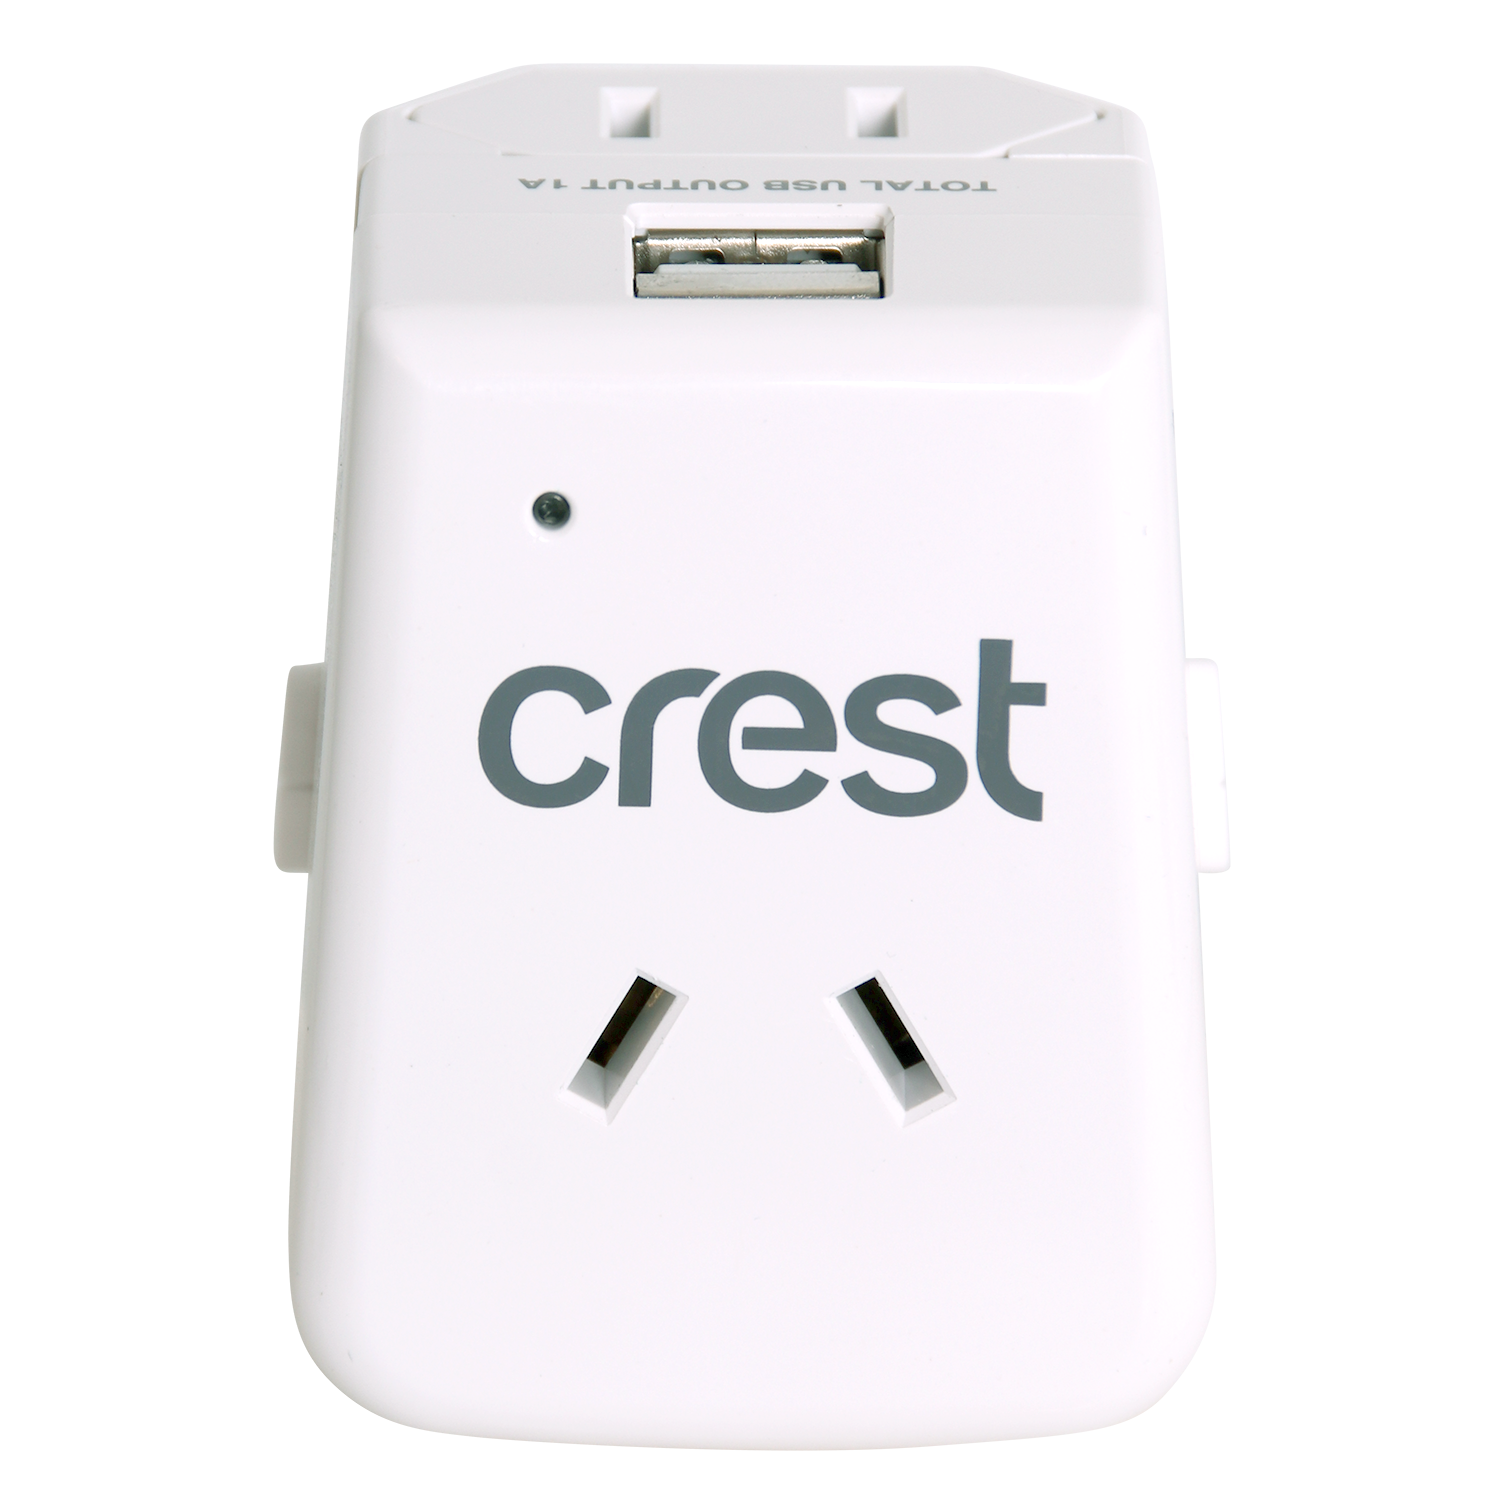 Crest Outbound Travel Power Adaptor